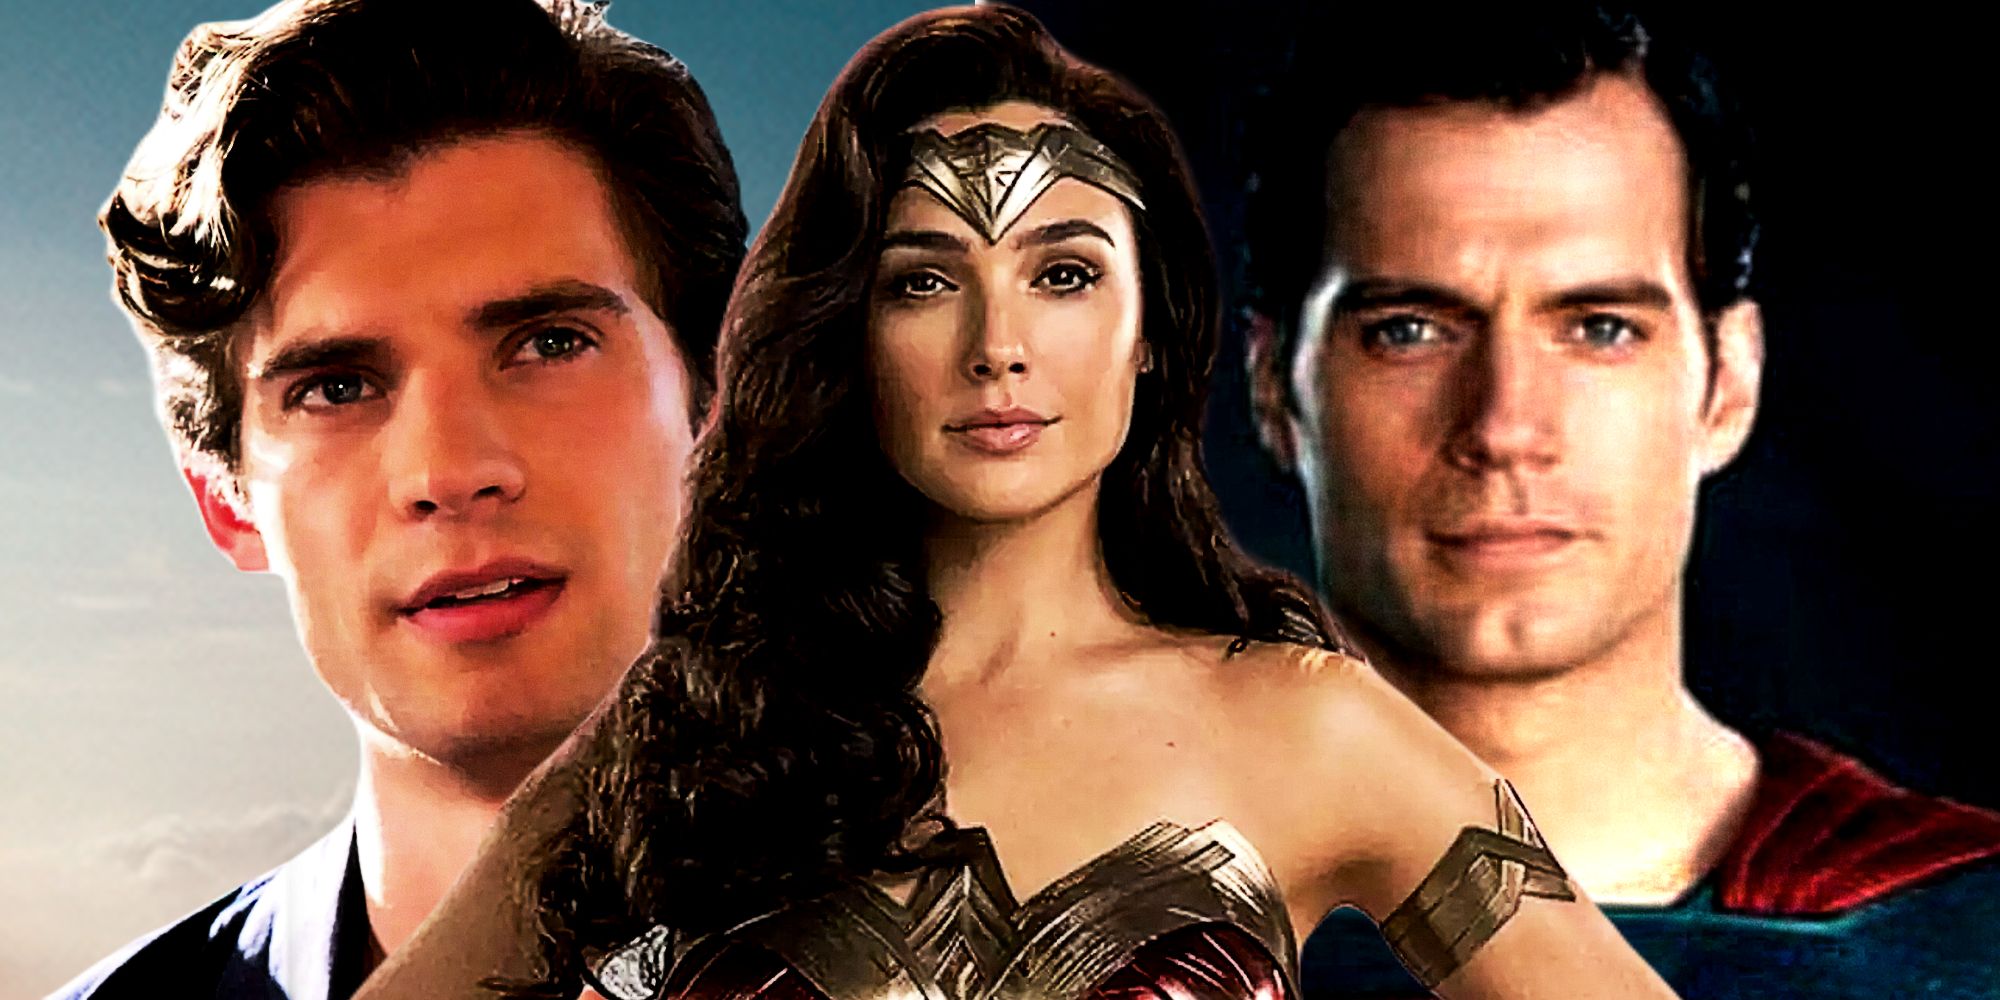 Wonder Woman 3' Likely Dead as DC Considers Major Reboot, wonder